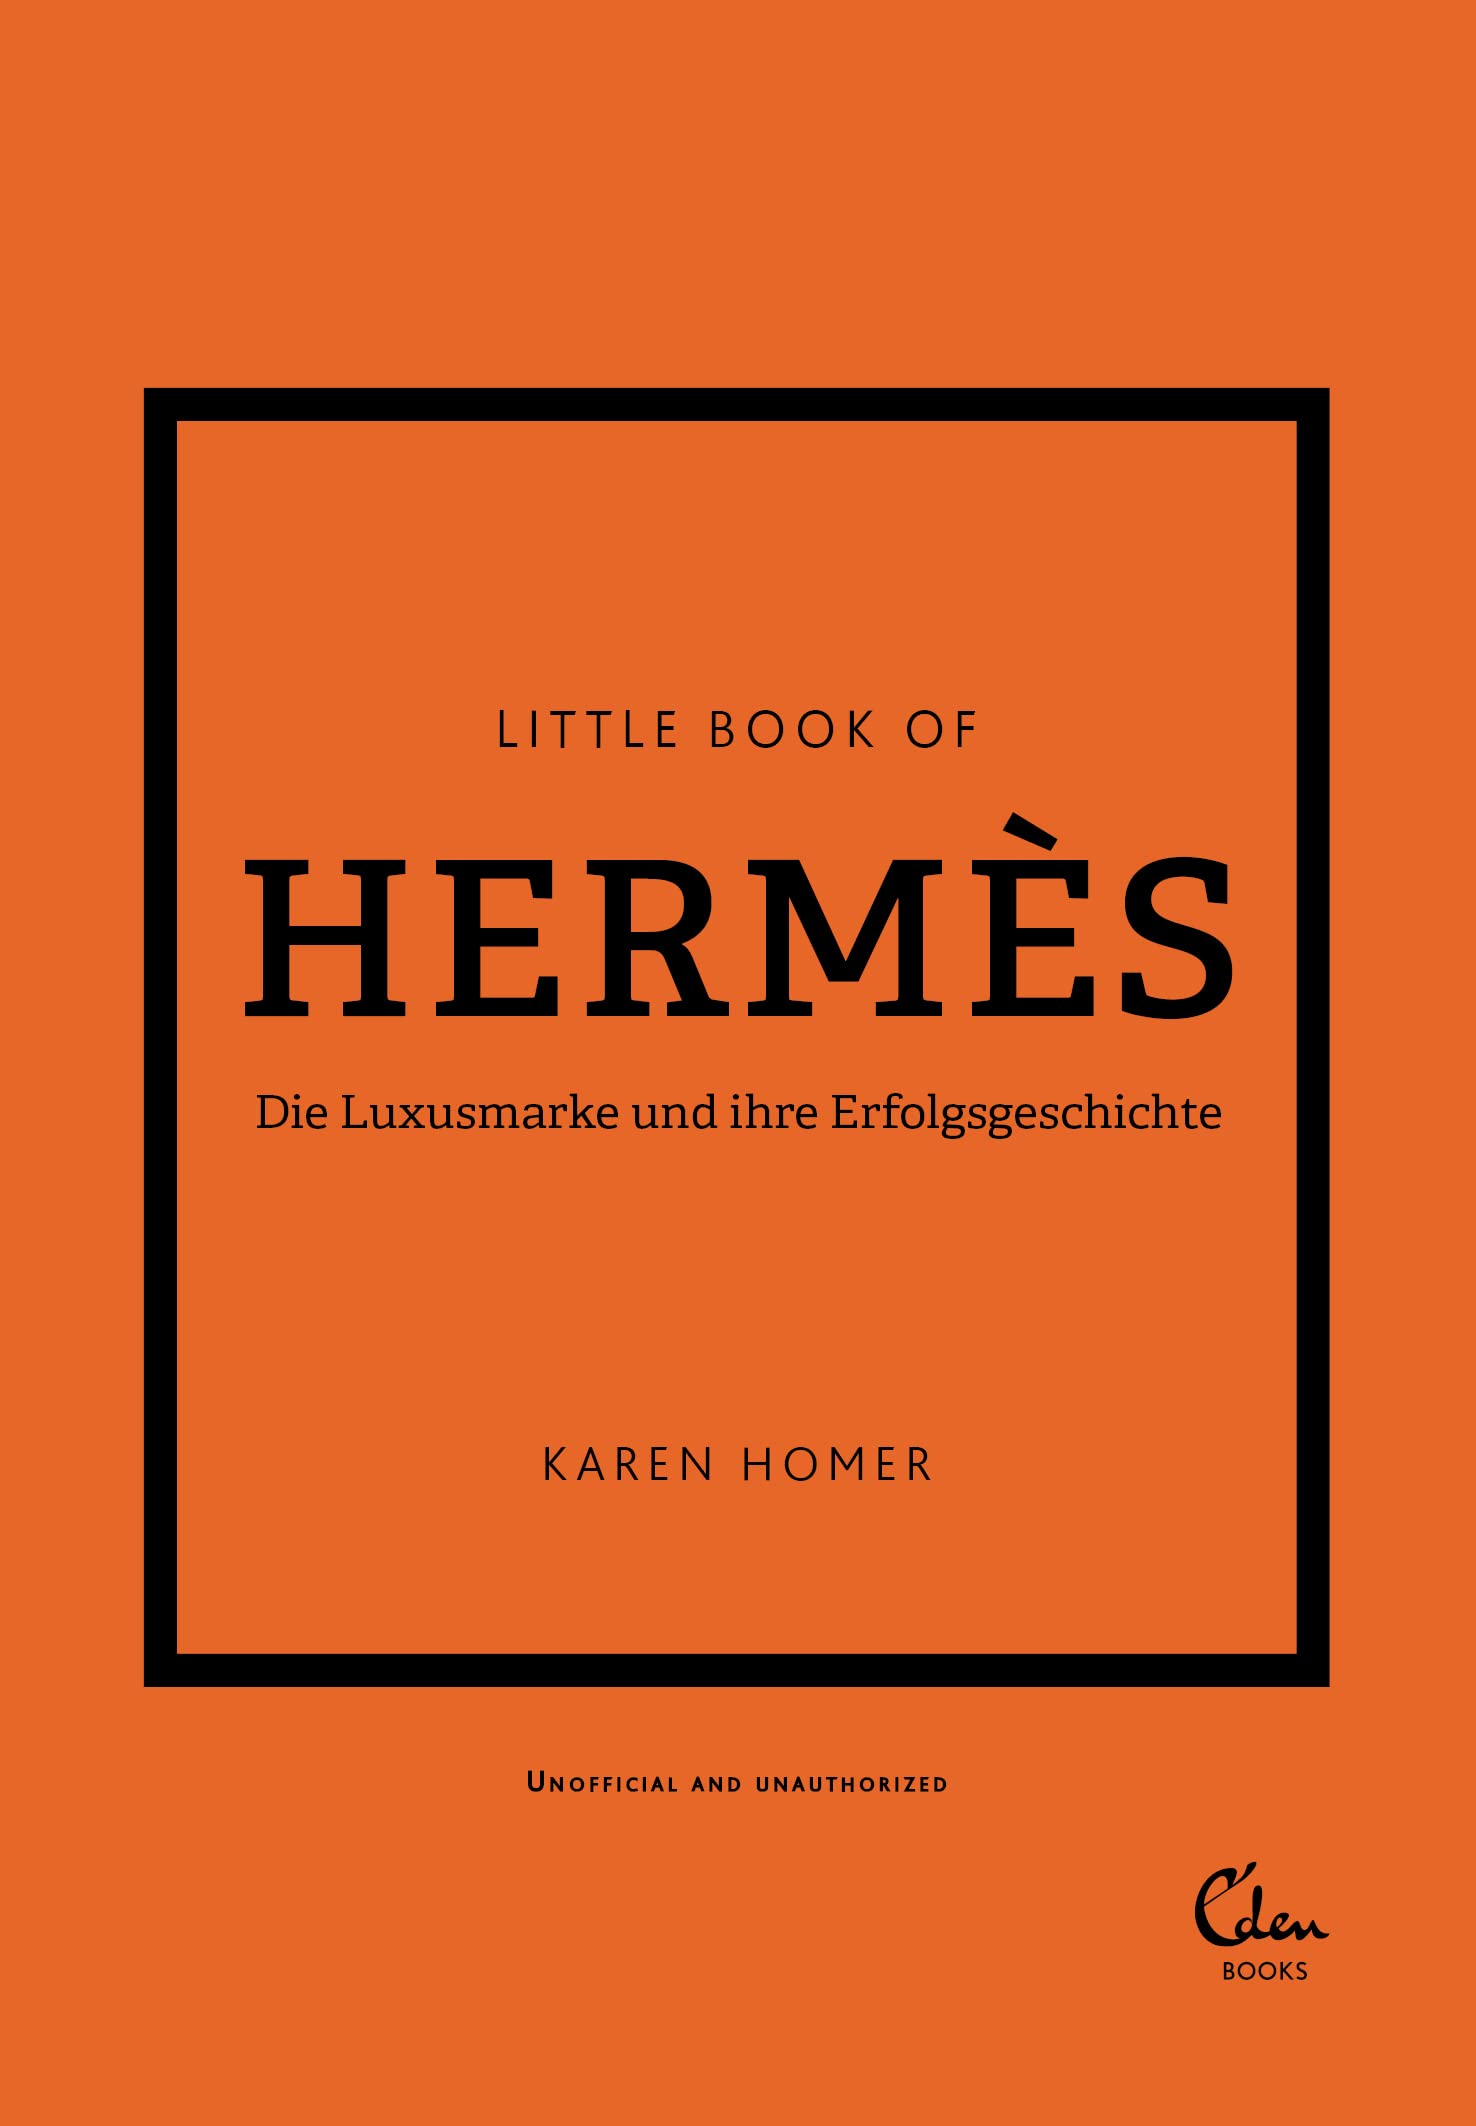 Buchcover: Karen Homer: Little Book of Hermès